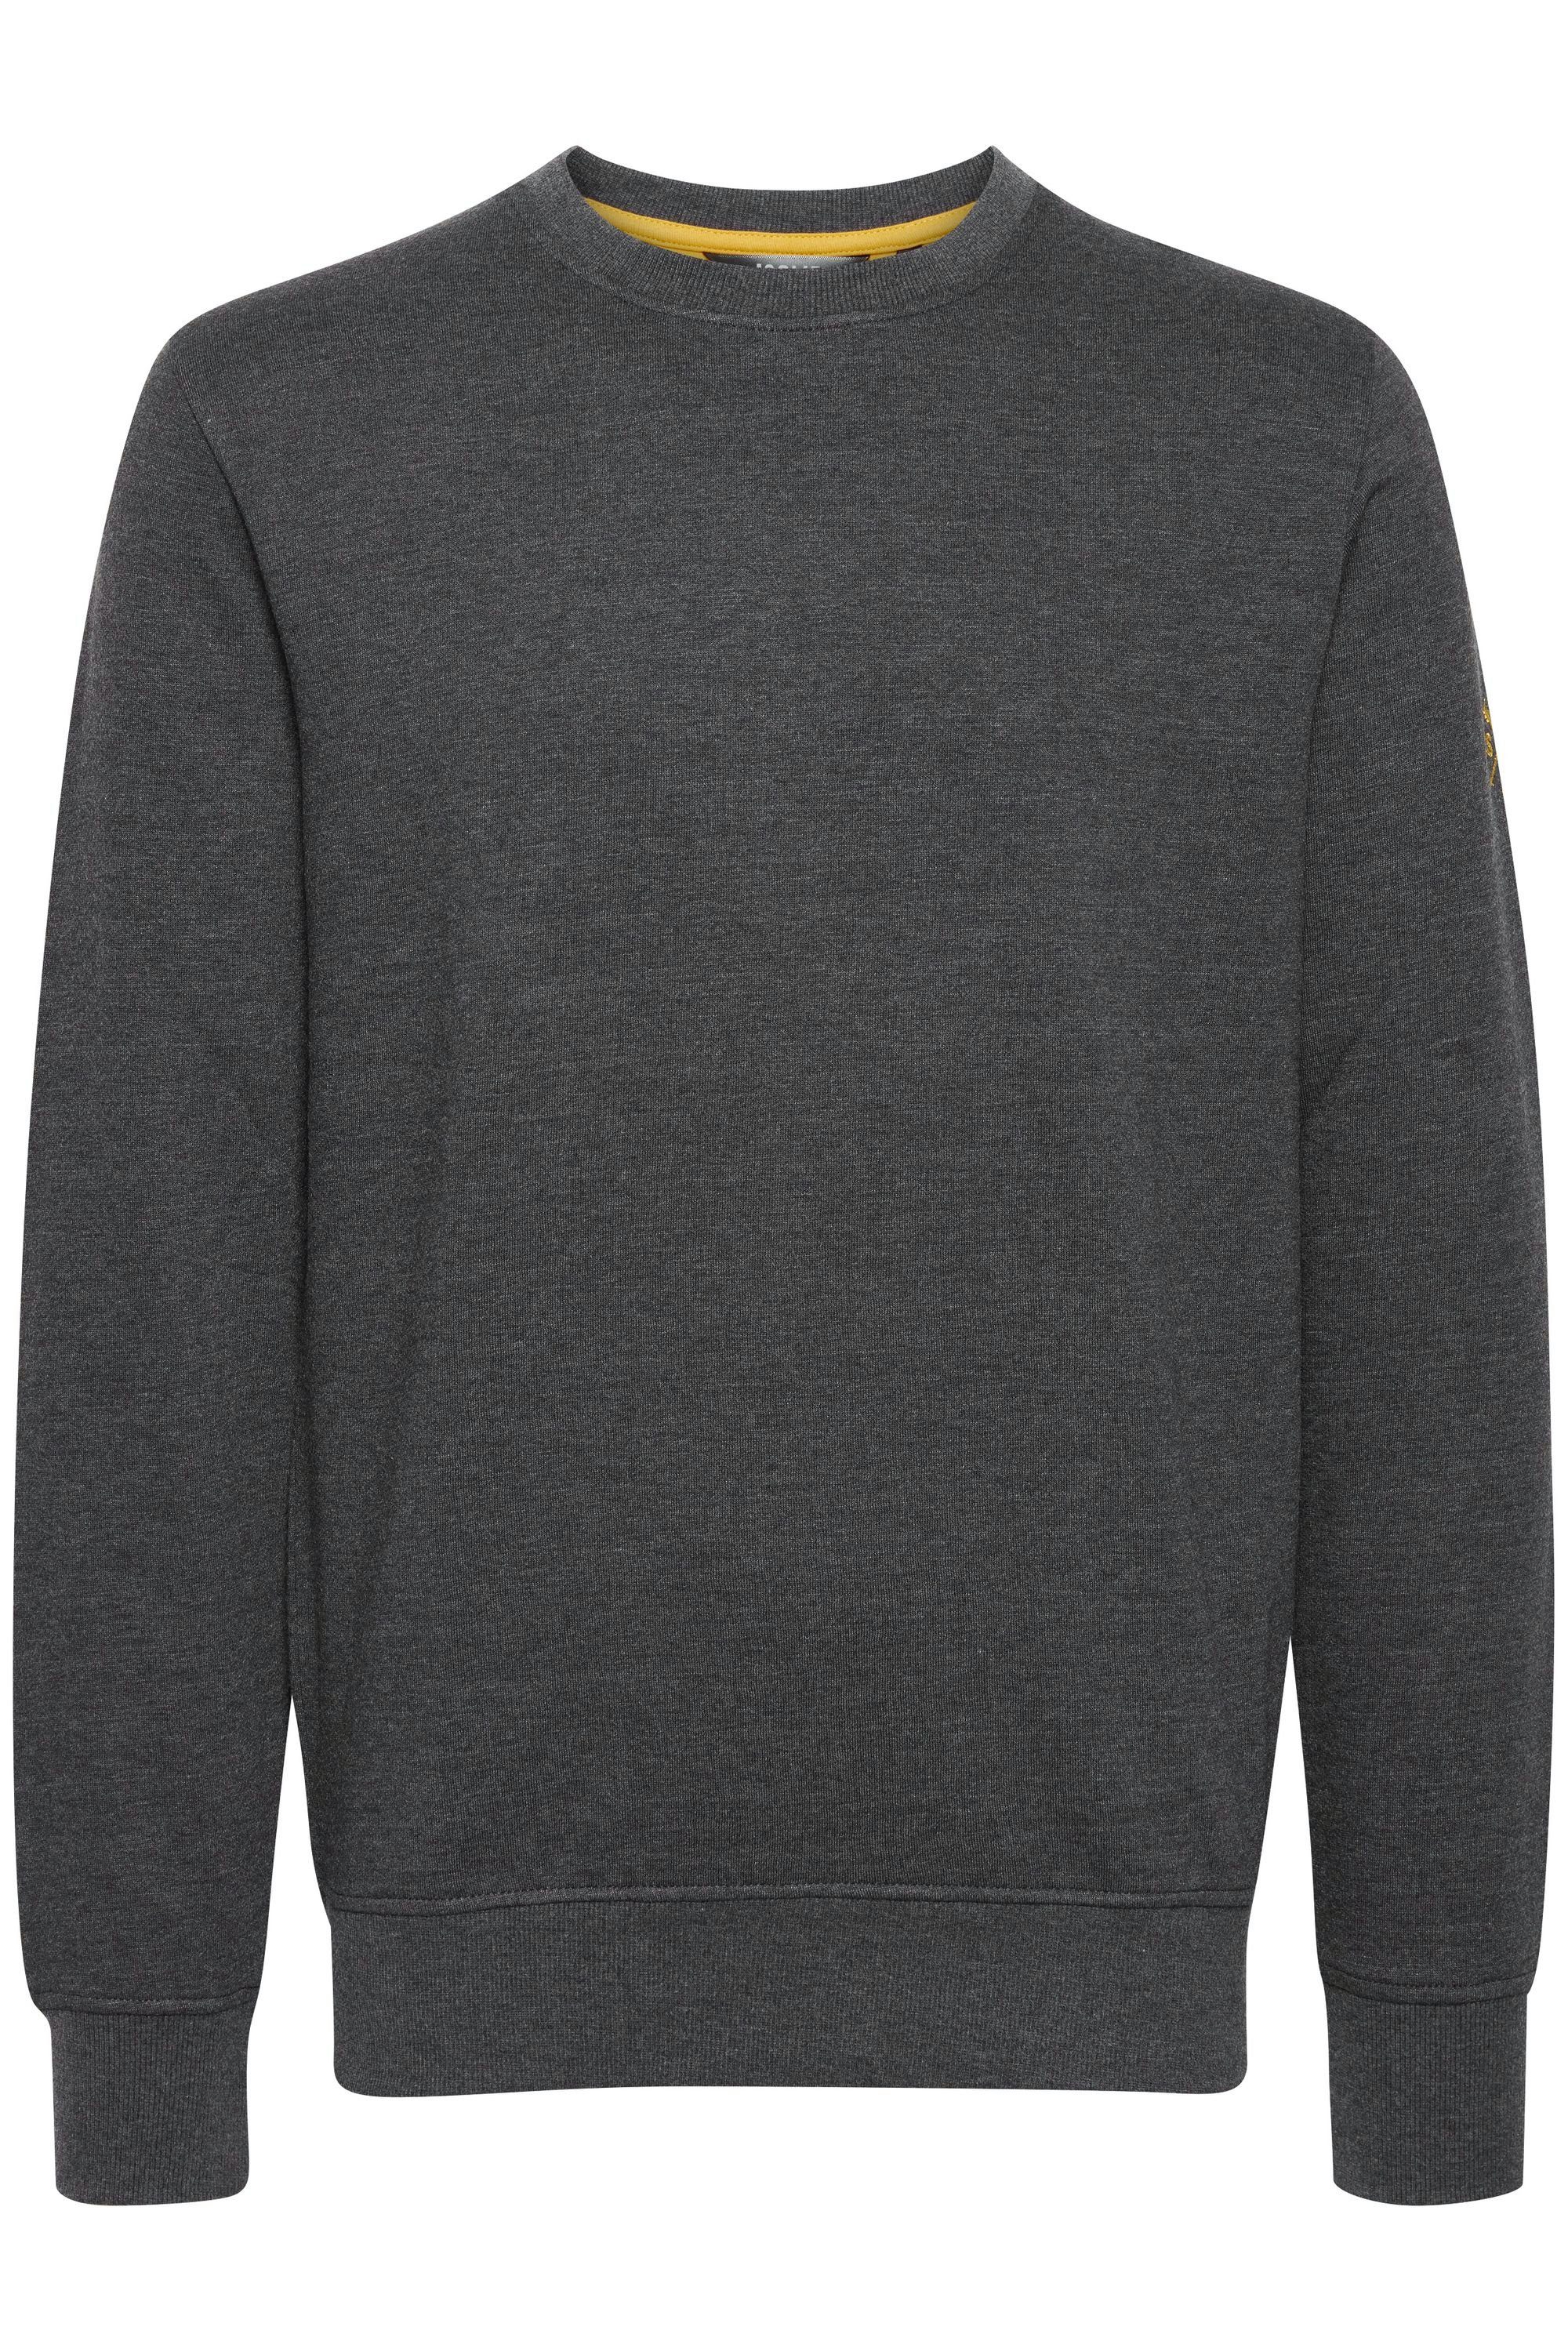 Rundhalsausschnitt SDKani !Solid Sweatshirt Dark mit Grey Melange (1940071) Sweatshirt